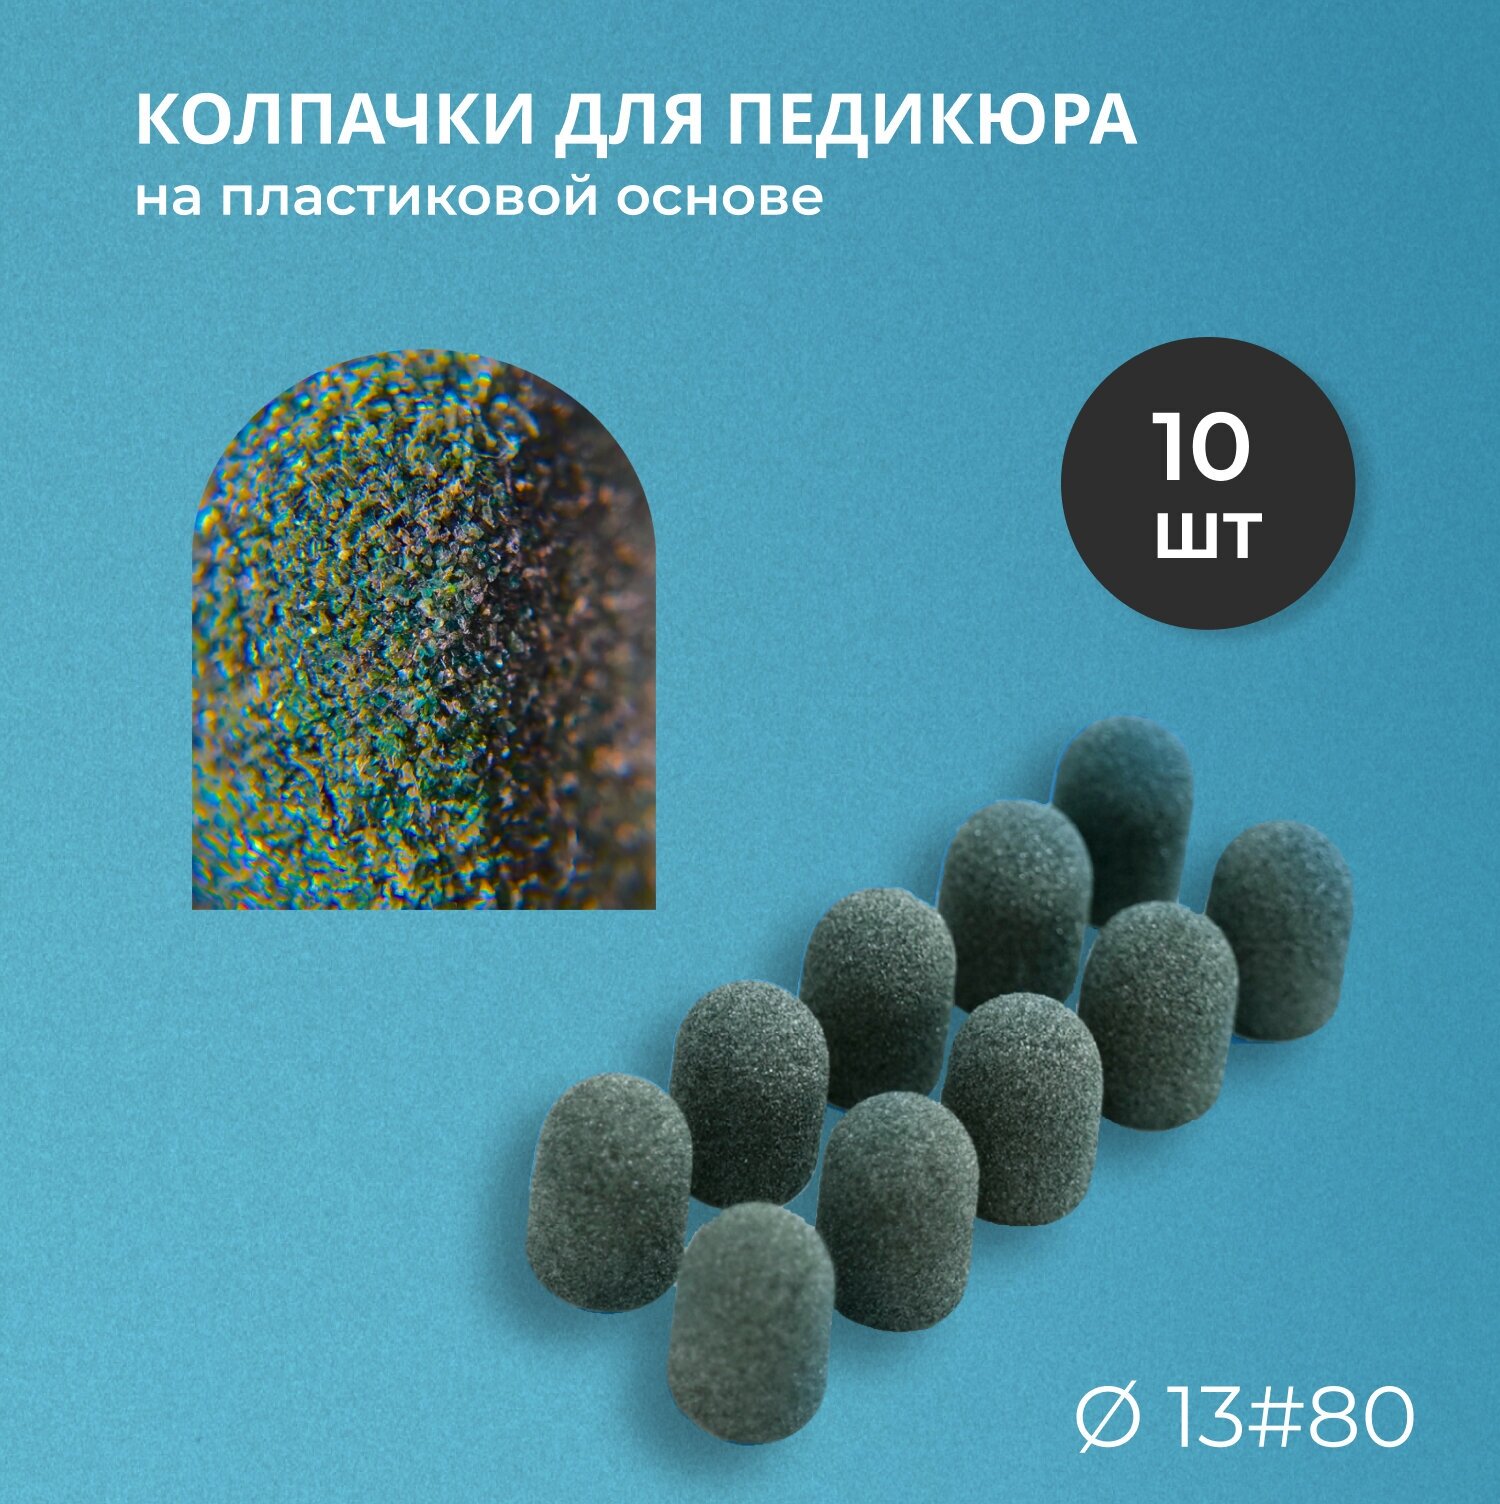 Набор педикюрный Kolpachki shop (SiC Premium) 13мм #80 - 10 шт